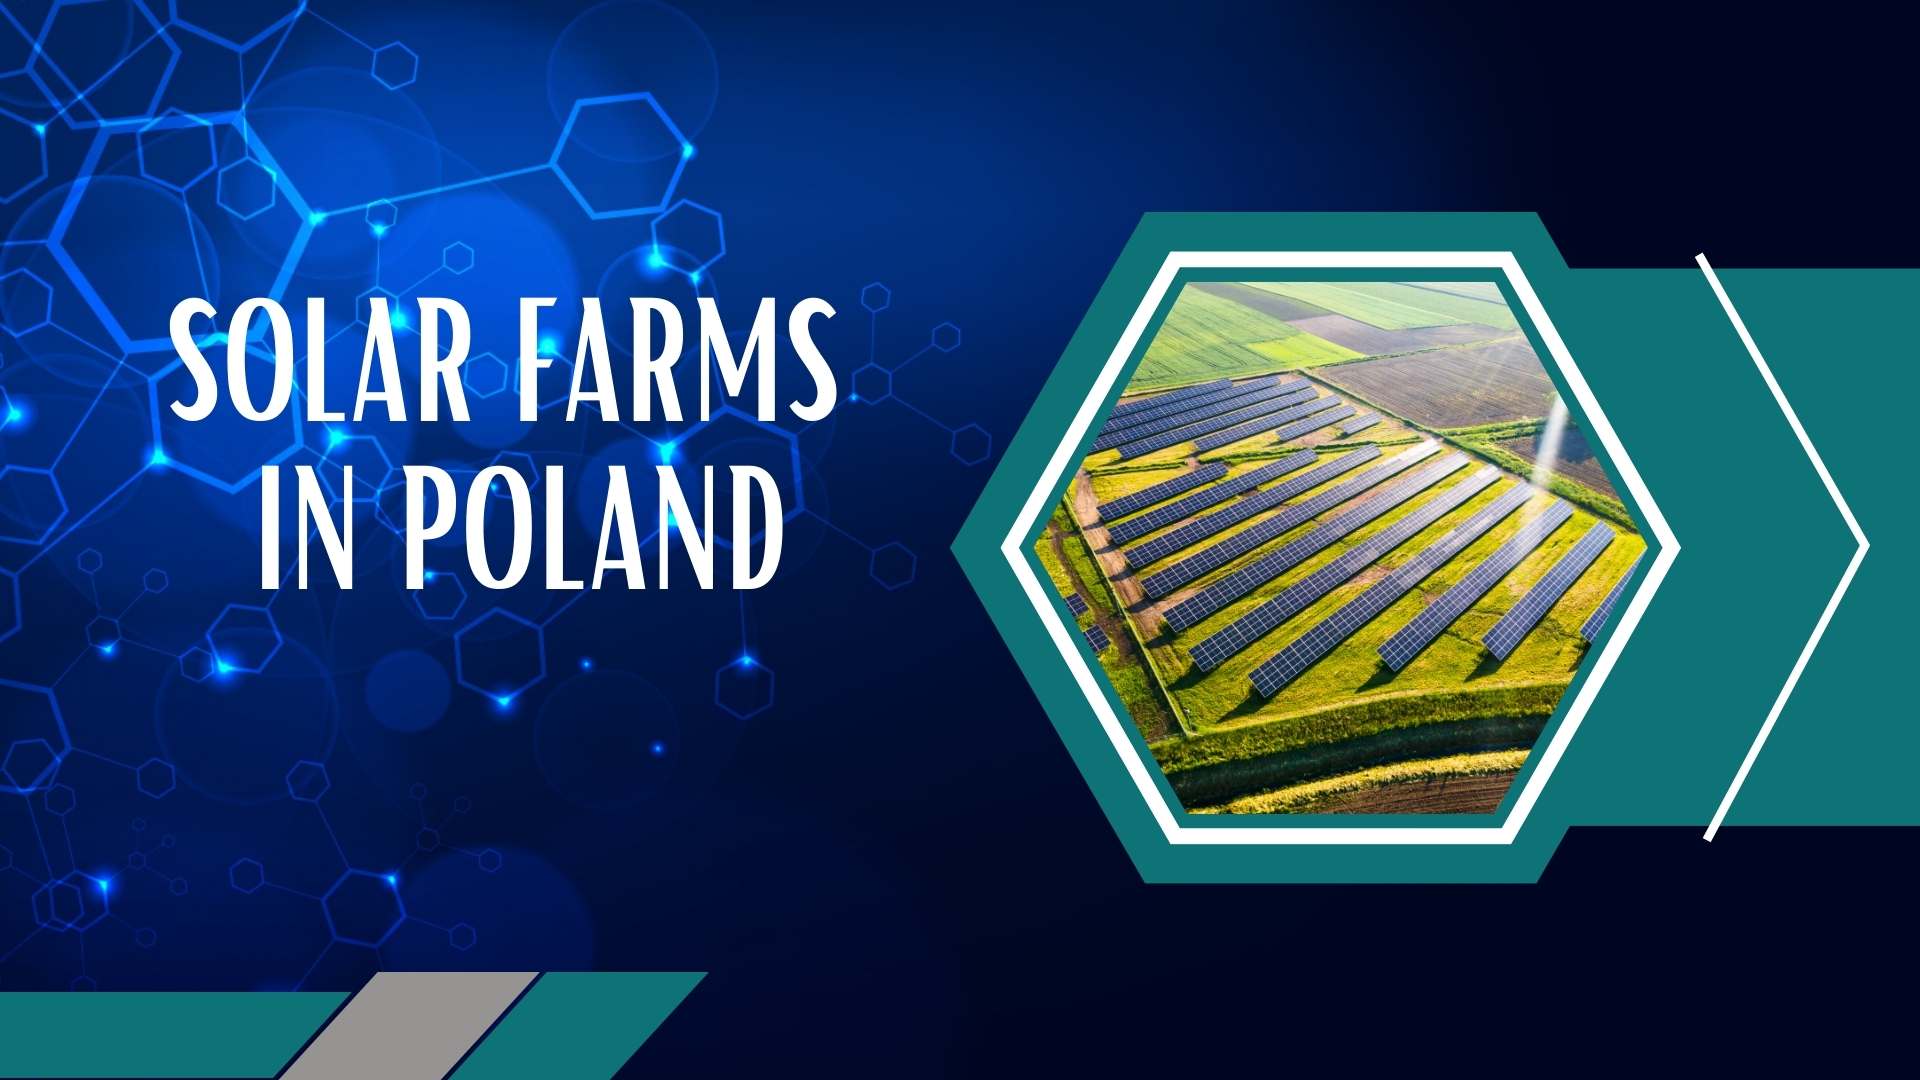 Solar farms in Poland